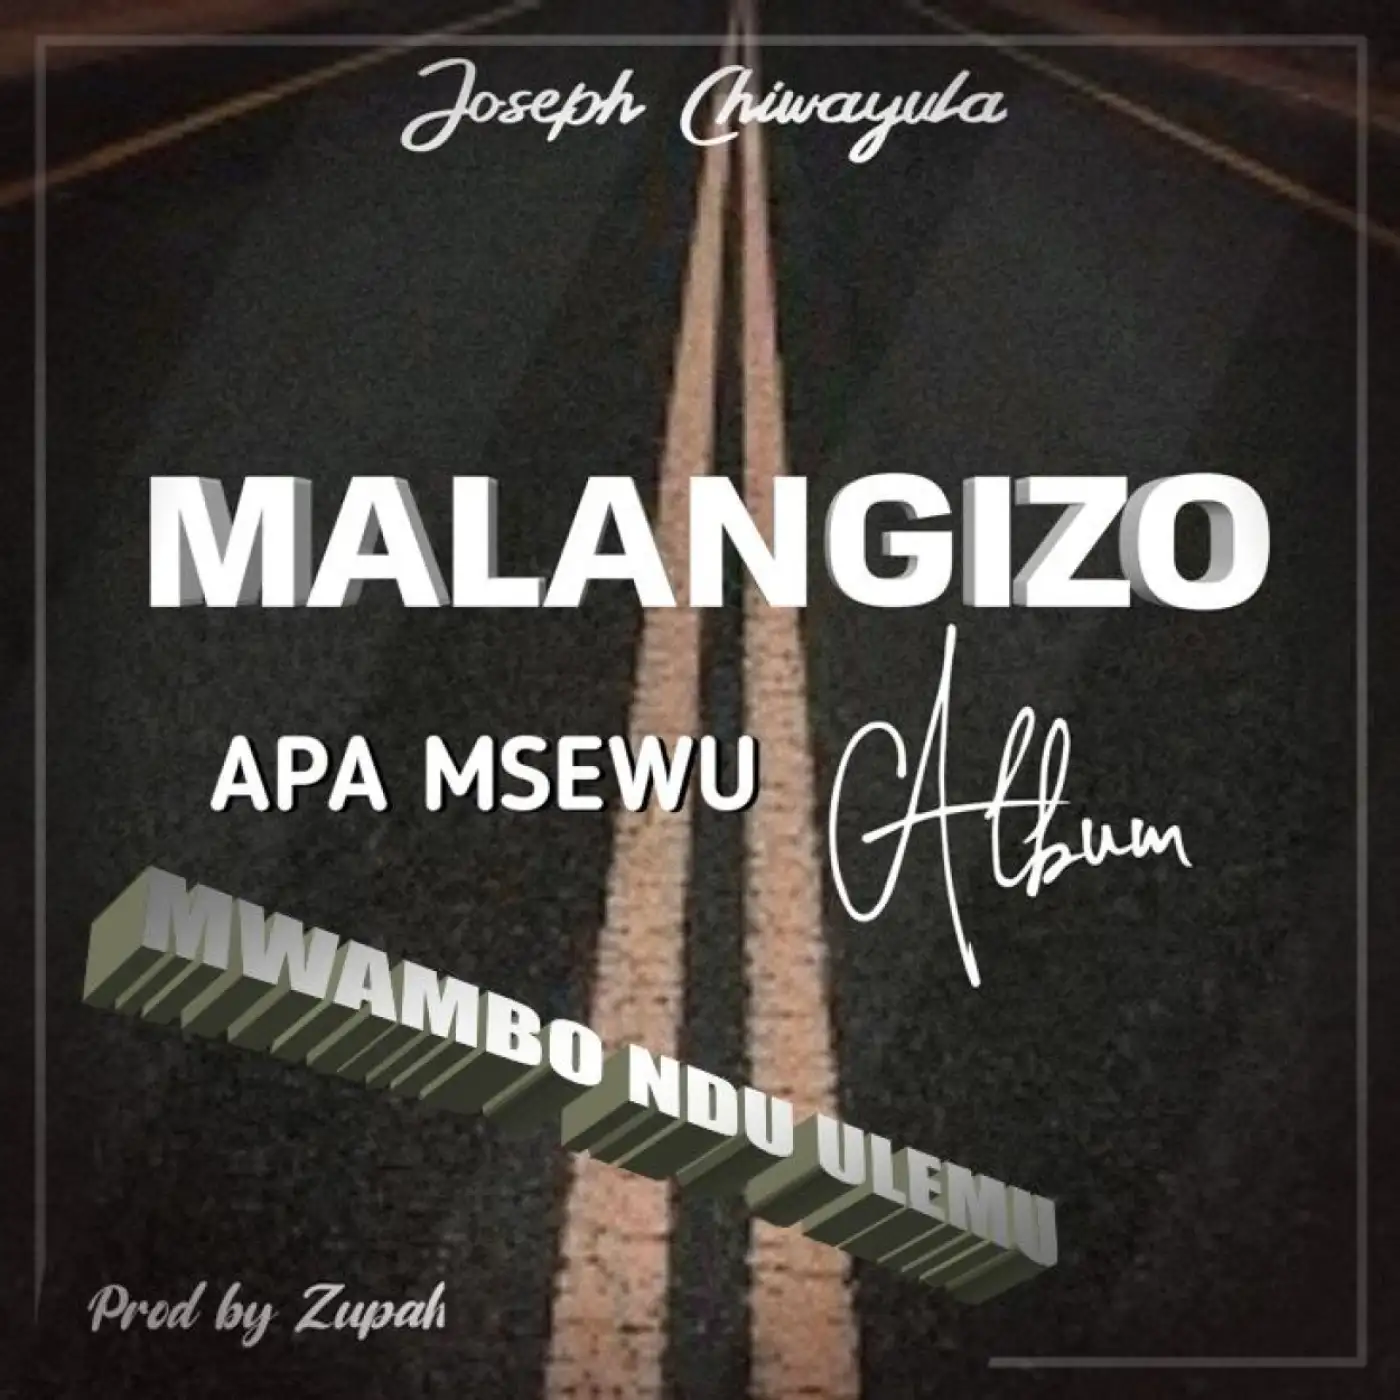 joseph-chiwayula-mwambo-ndi-ulemu-prod-zupah-mp3-download-mp3 download